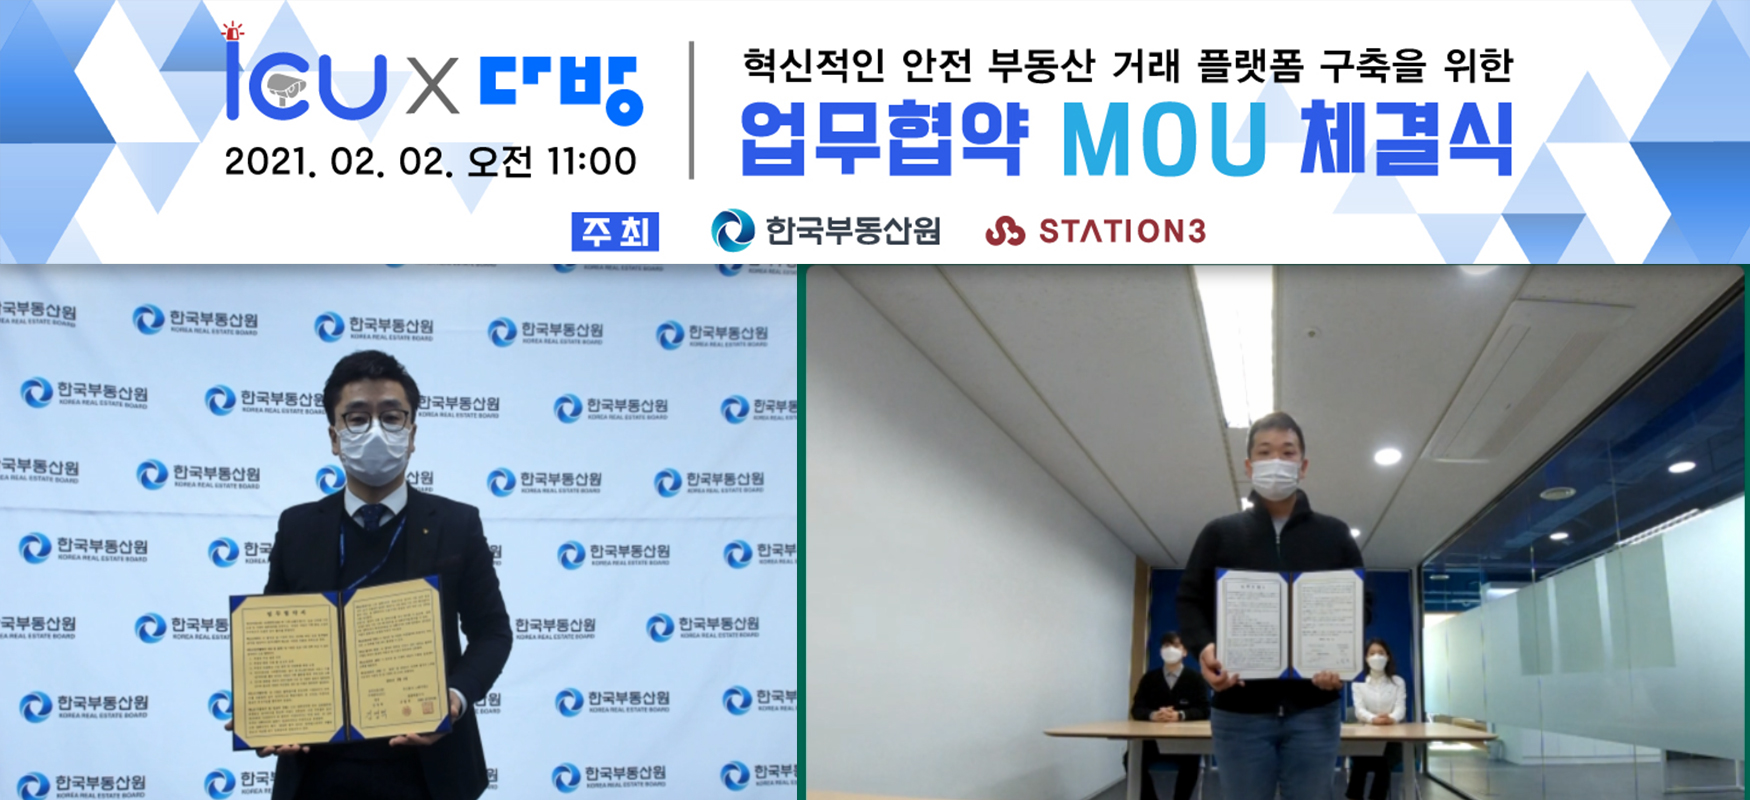 ▲  스테이션3 다방 한유순 대표(오른쪽)와 한국부동산원 사내벤처 아이쿠 김영혁 팀장이 비대면 MOU를 체결하는 모습